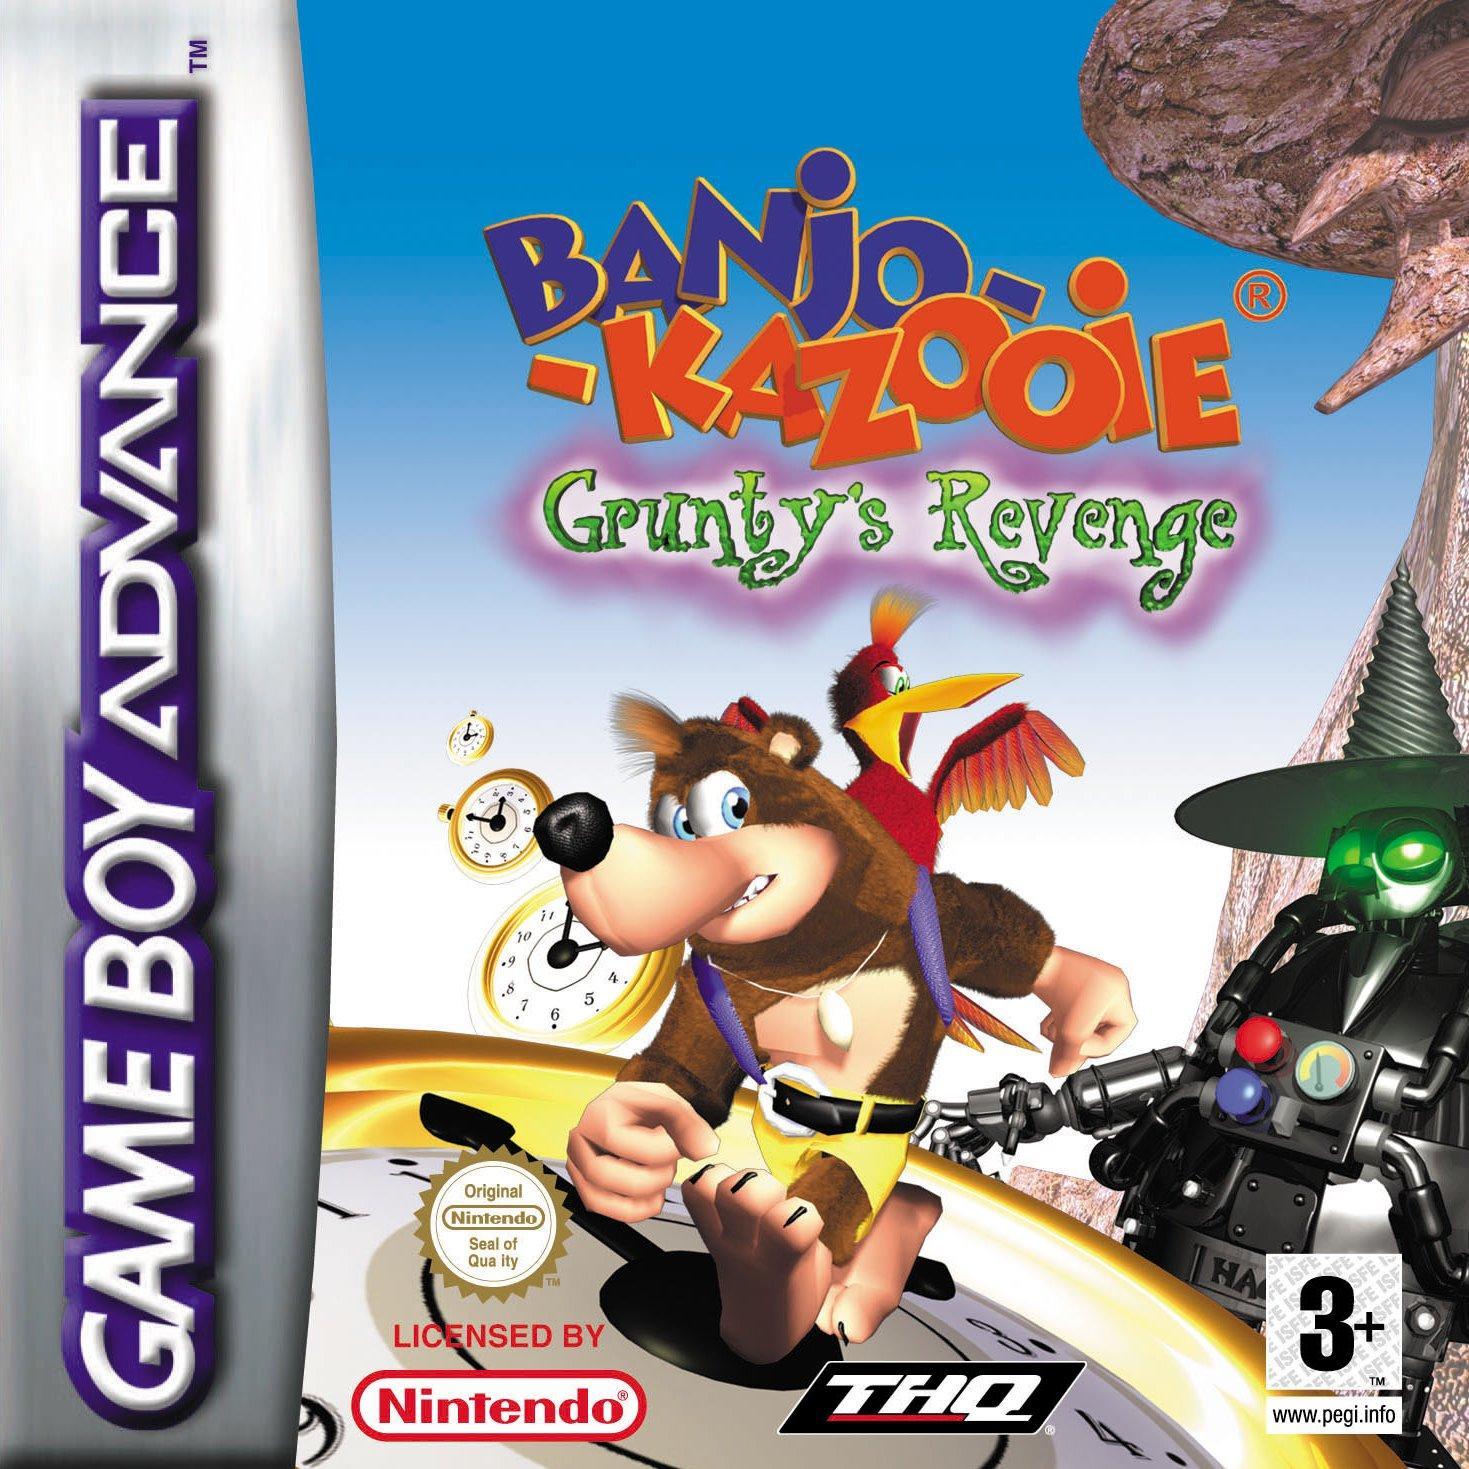 Banjo-Kazooie: Grunty's Revenge gba download